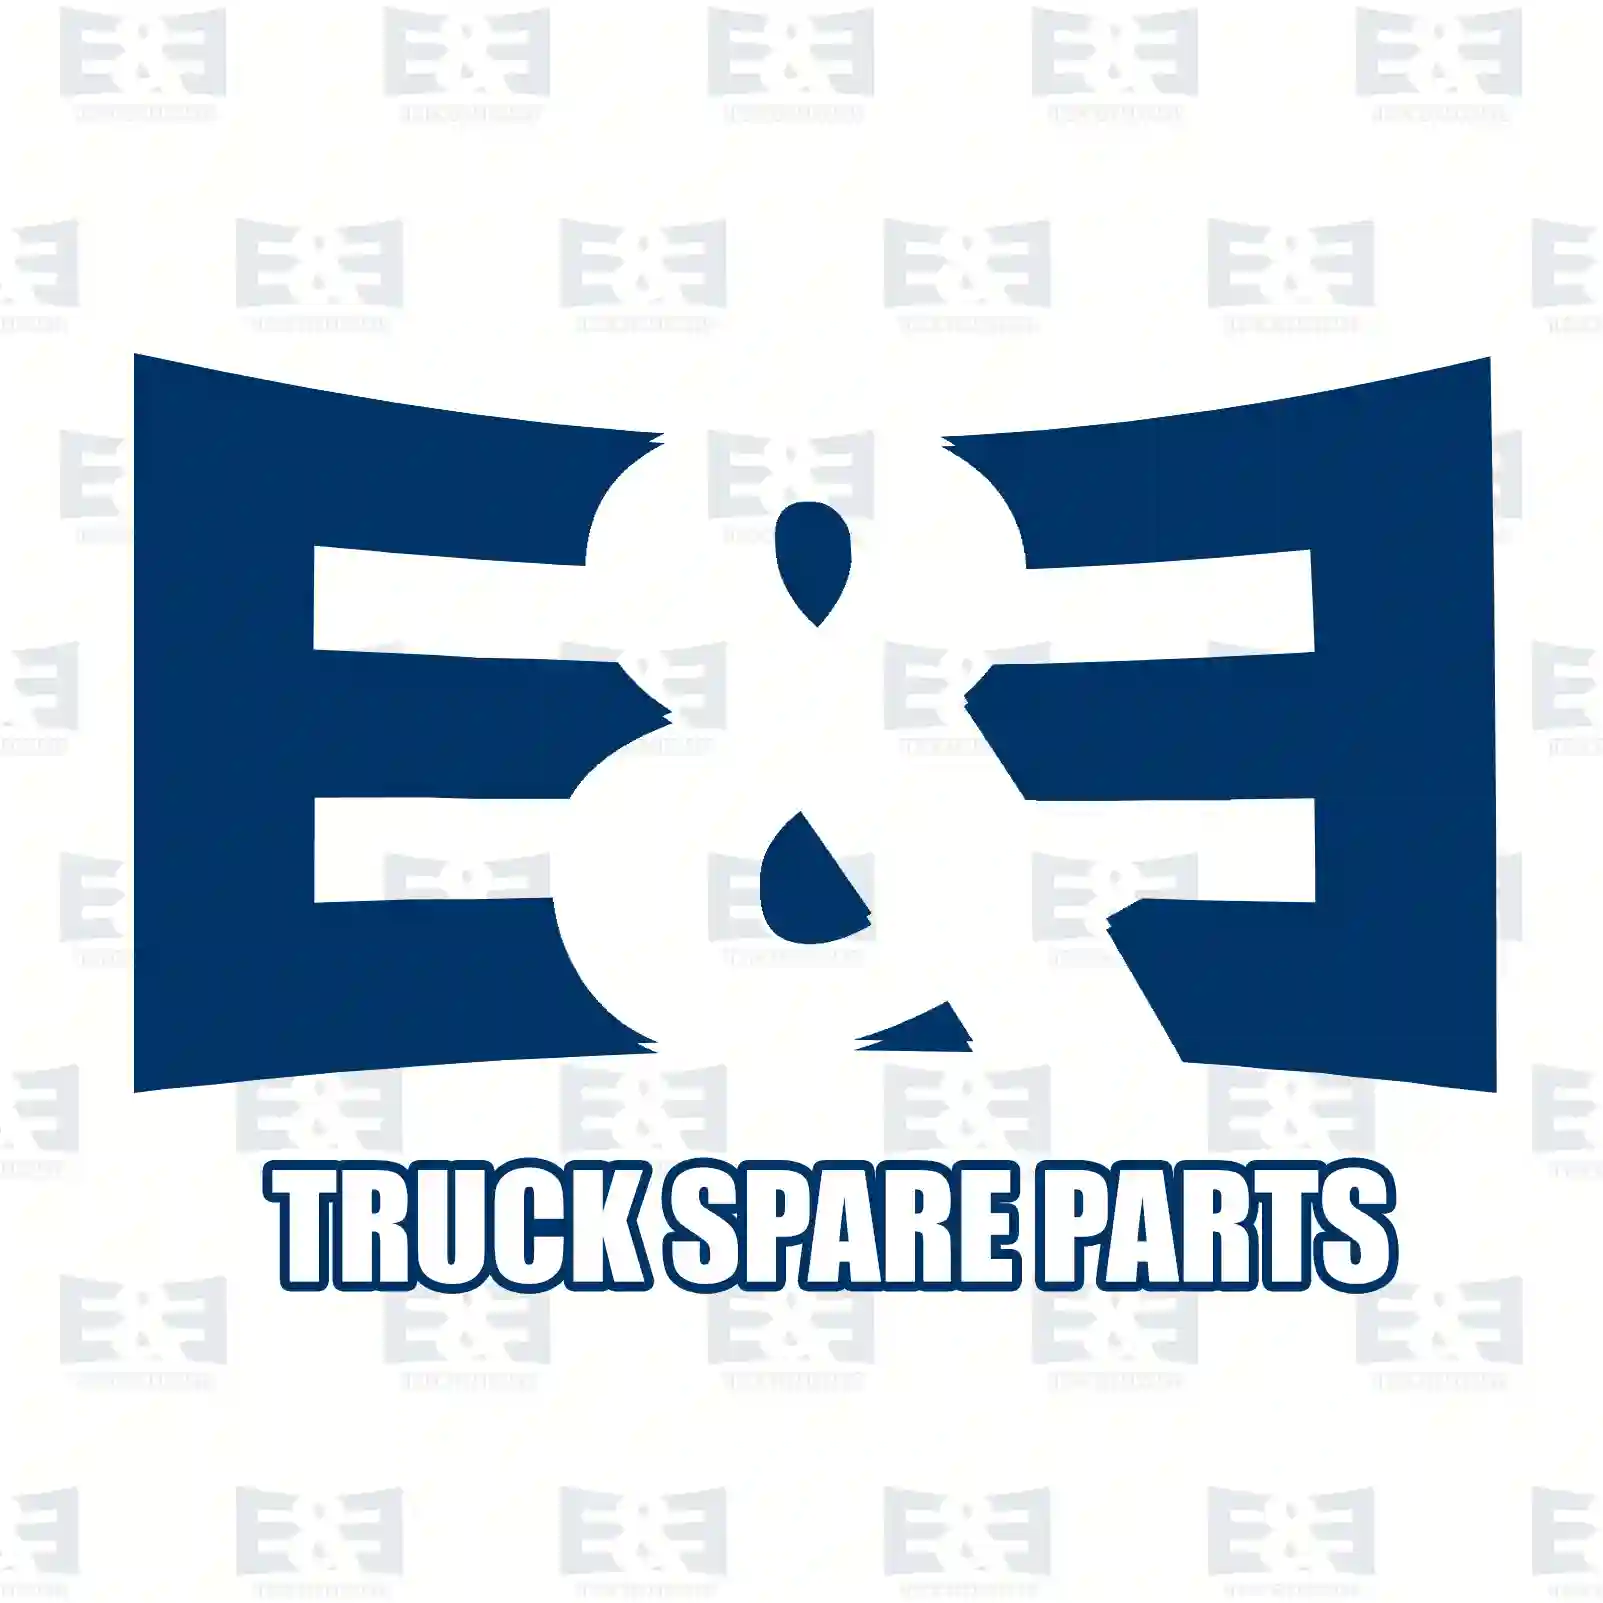 Air tank, 2E2295707, 0014320701, 0014321001, 0014325801, 0014329001, 0014329101, 0034320301, 0044320501, 0054323001, 0064323401, ZG50102-0008 ||  2E2295707 E&E Truck Spare Parts | Truck Spare Parts, Auotomotive Spare Parts Air tank, 2E2295707, 0014320701, 0014321001, 0014325801, 0014329001, 0014329101, 0034320301, 0044320501, 0054323001, 0064323401, ZG50102-0008 ||  2E2295707 E&E Truck Spare Parts | Truck Spare Parts, Auotomotive Spare Parts